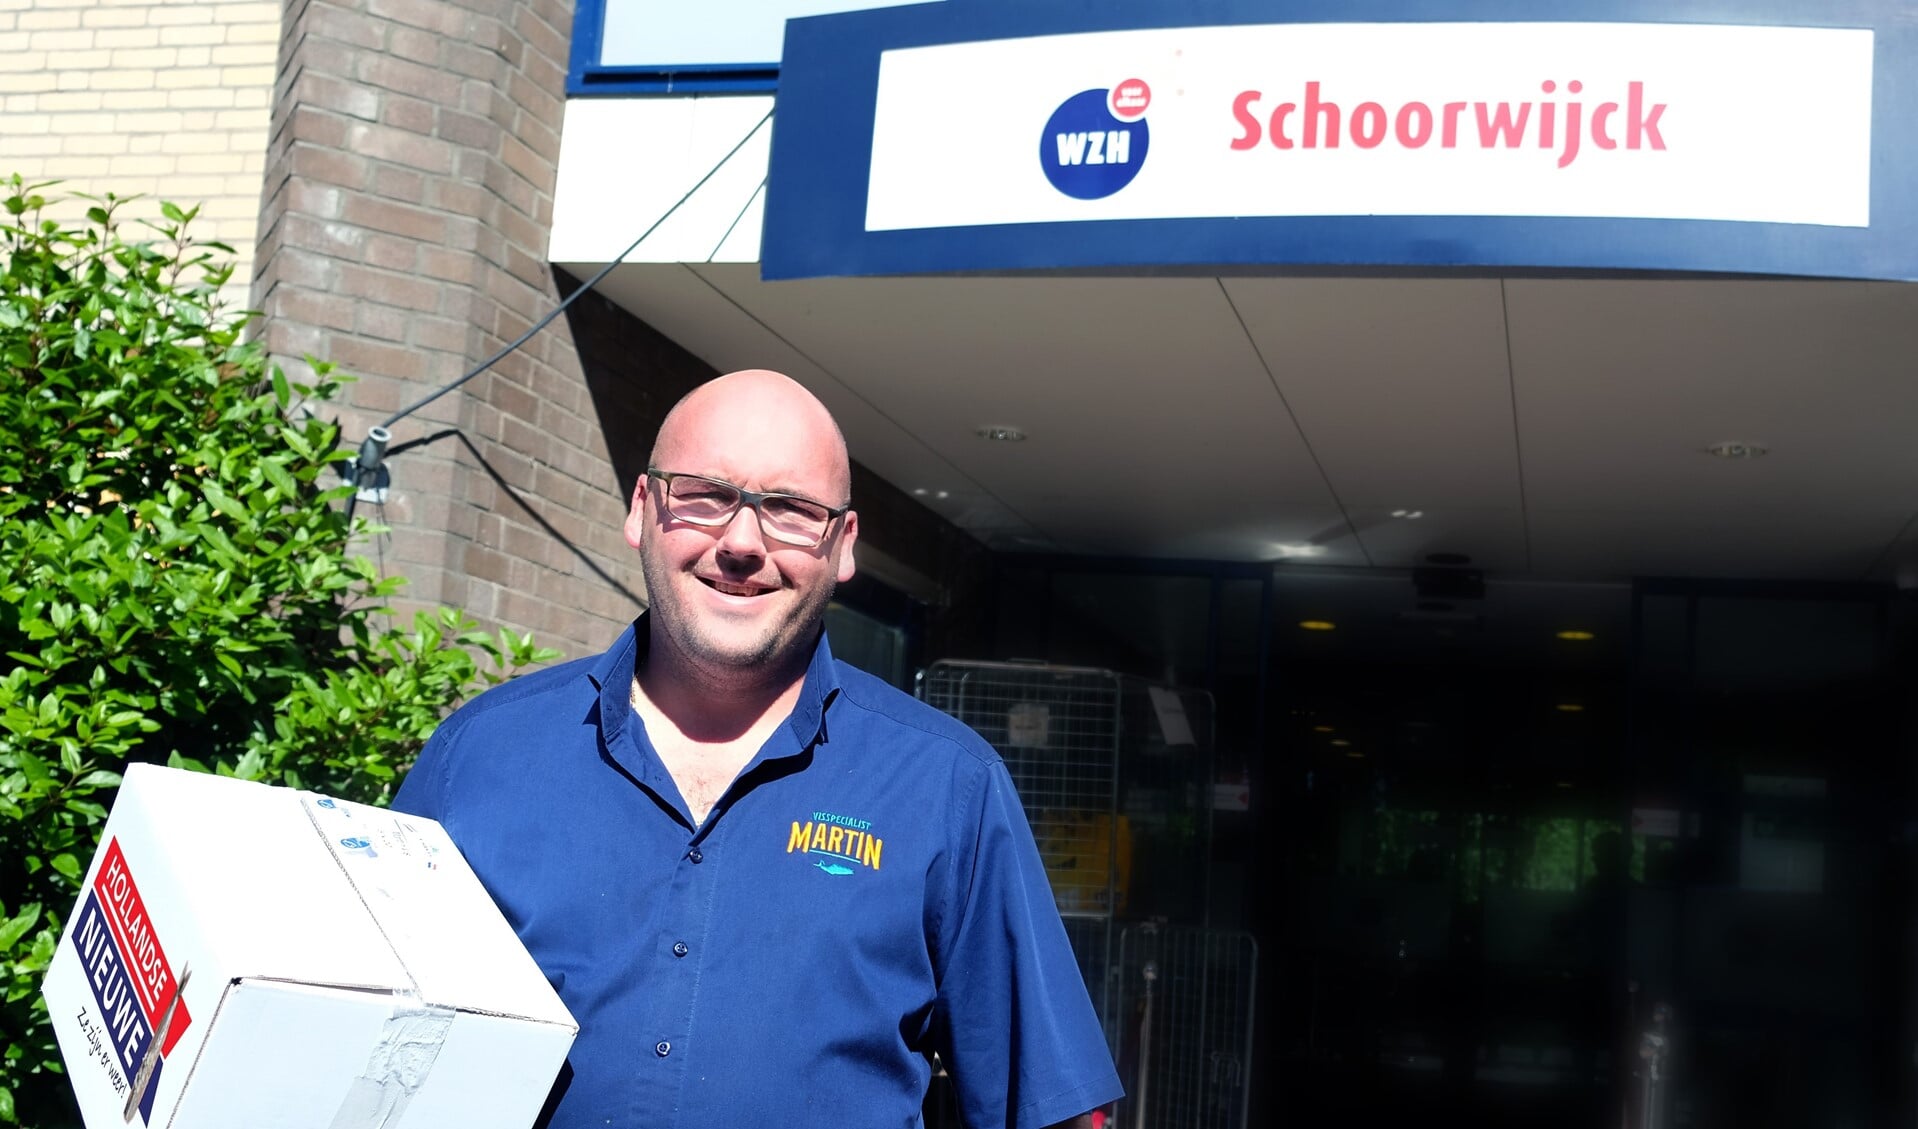 Visspecialist Martin in Leidschendam Centrum heeft zaterdag 200 verse haringen bij Woonzorgcentrum Schoorwijck bezorgd. 